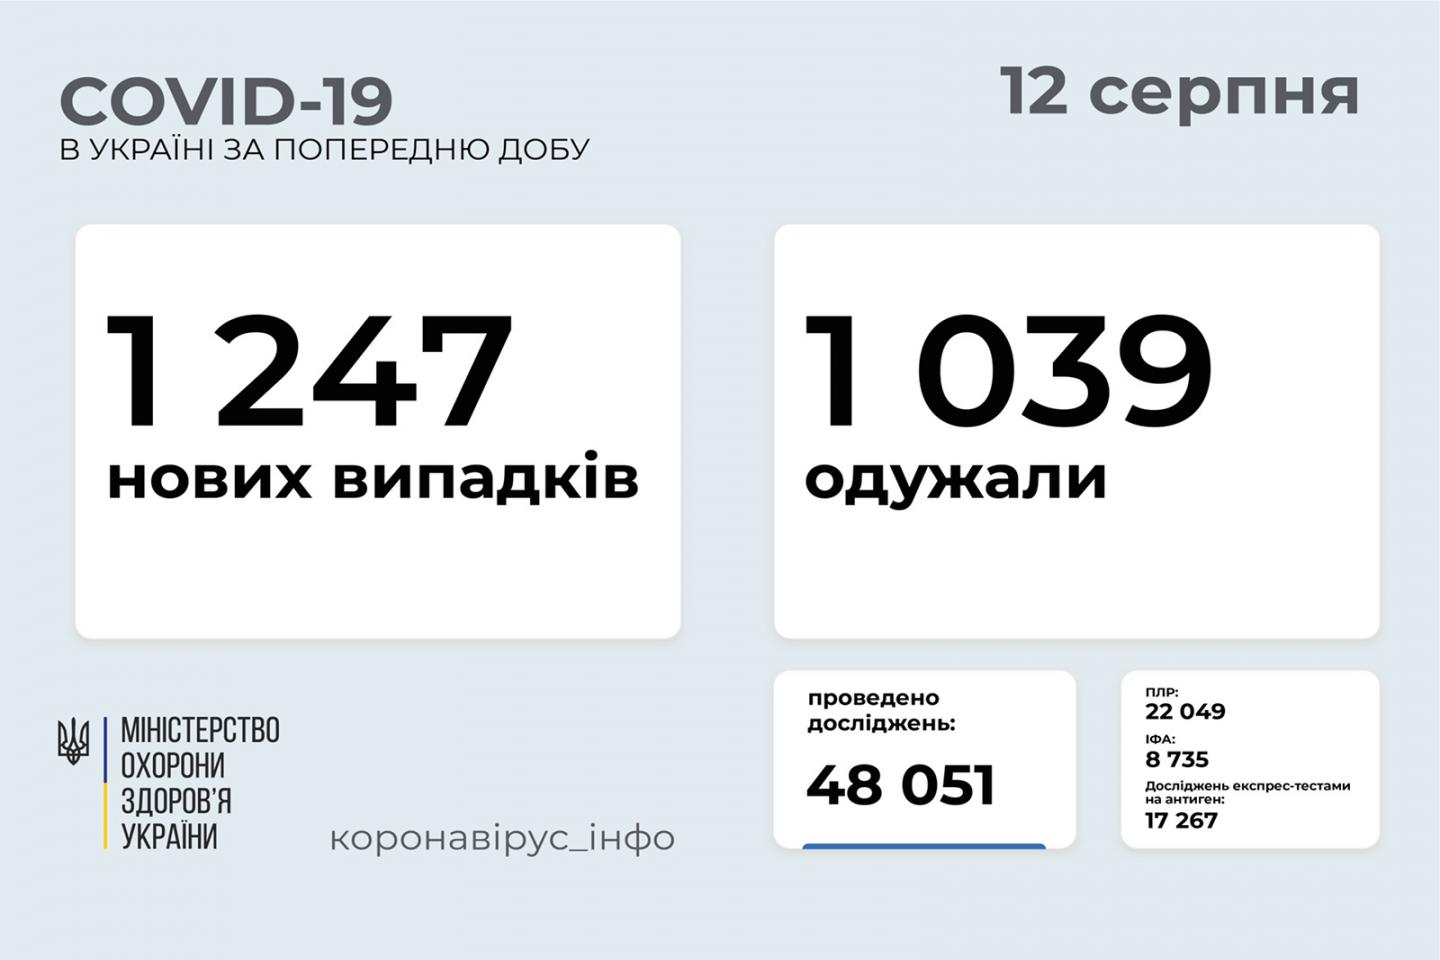 http://dunrada.gov.ua/uploadfile/archive_news/2021/08/12/2021-08-12_368/images/images-46559.jpg